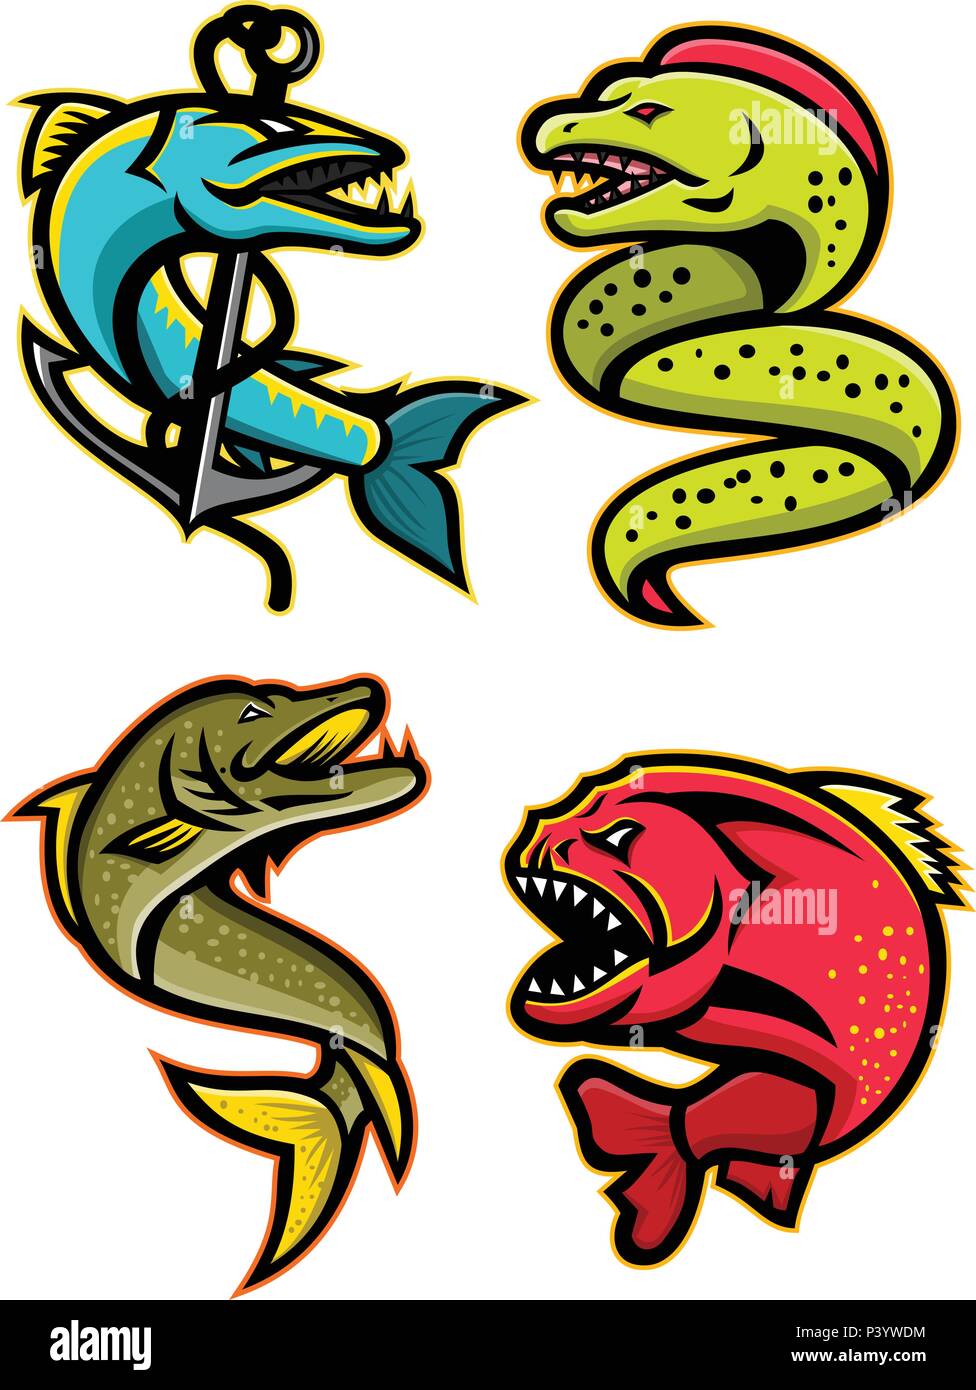 Icona di mascotte illustrazione set di feroci e temibili pesci come la barracuda, murene, luccio del nord o muskellunge pesce, il piranha, pirana o Illustrazione Vettoriale